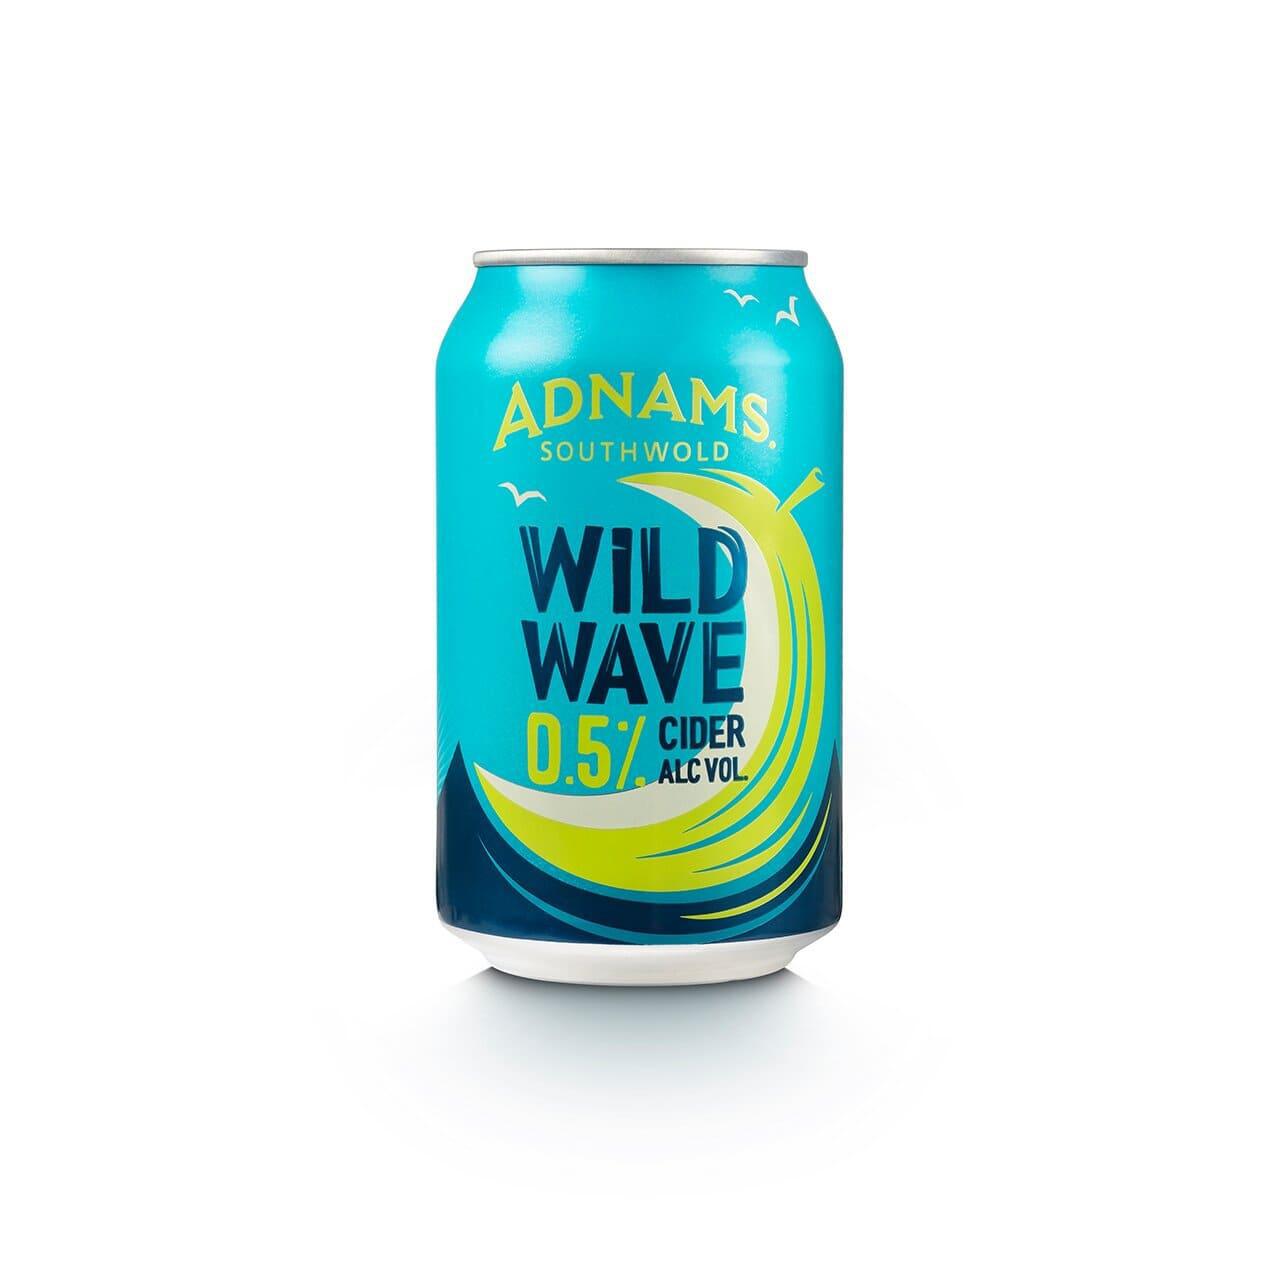 Adnams Wild Wave English Cider 0.5% 330ml